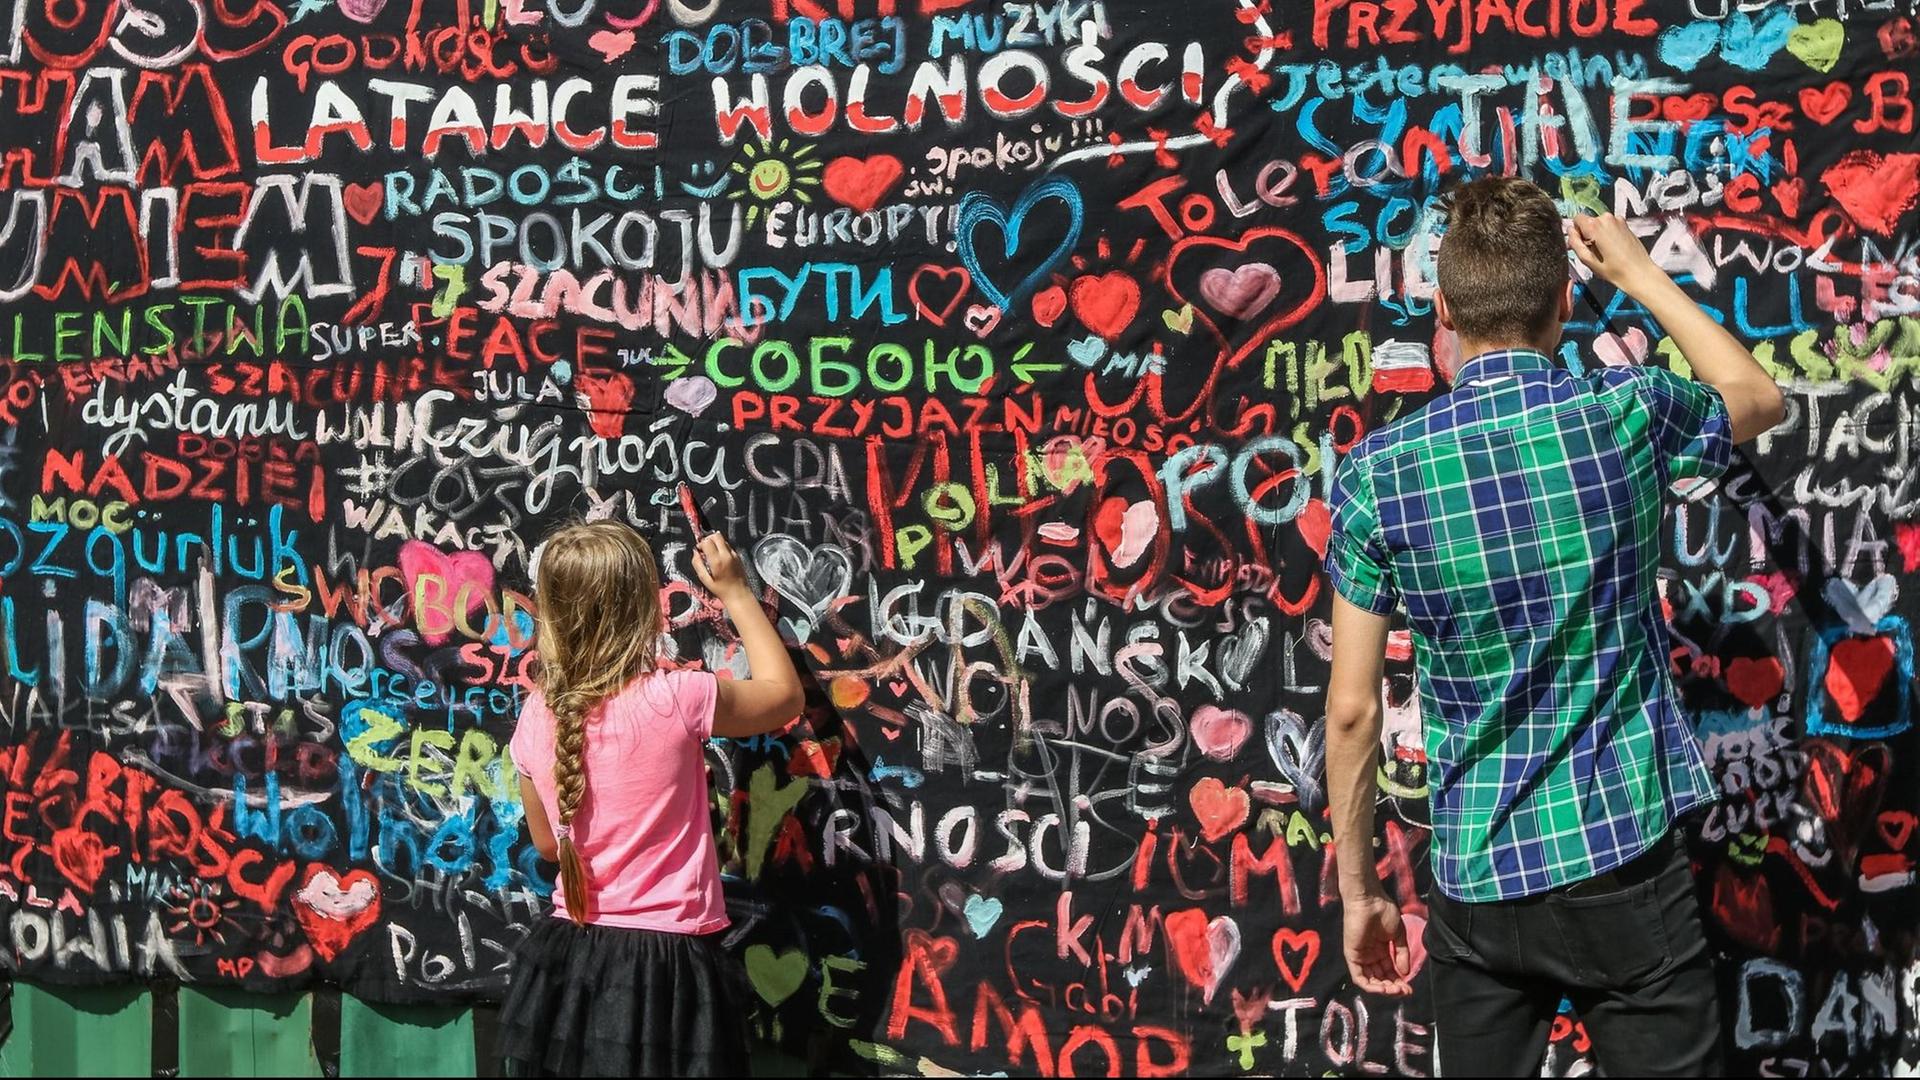 Menschen malen eine Mauer auf der Danziger Werft im Rahmen der "Freiheits- und Solidaritätstage" an. Hier nahm vor 30 Jahren die friedliche Revolution ihren Anfang.